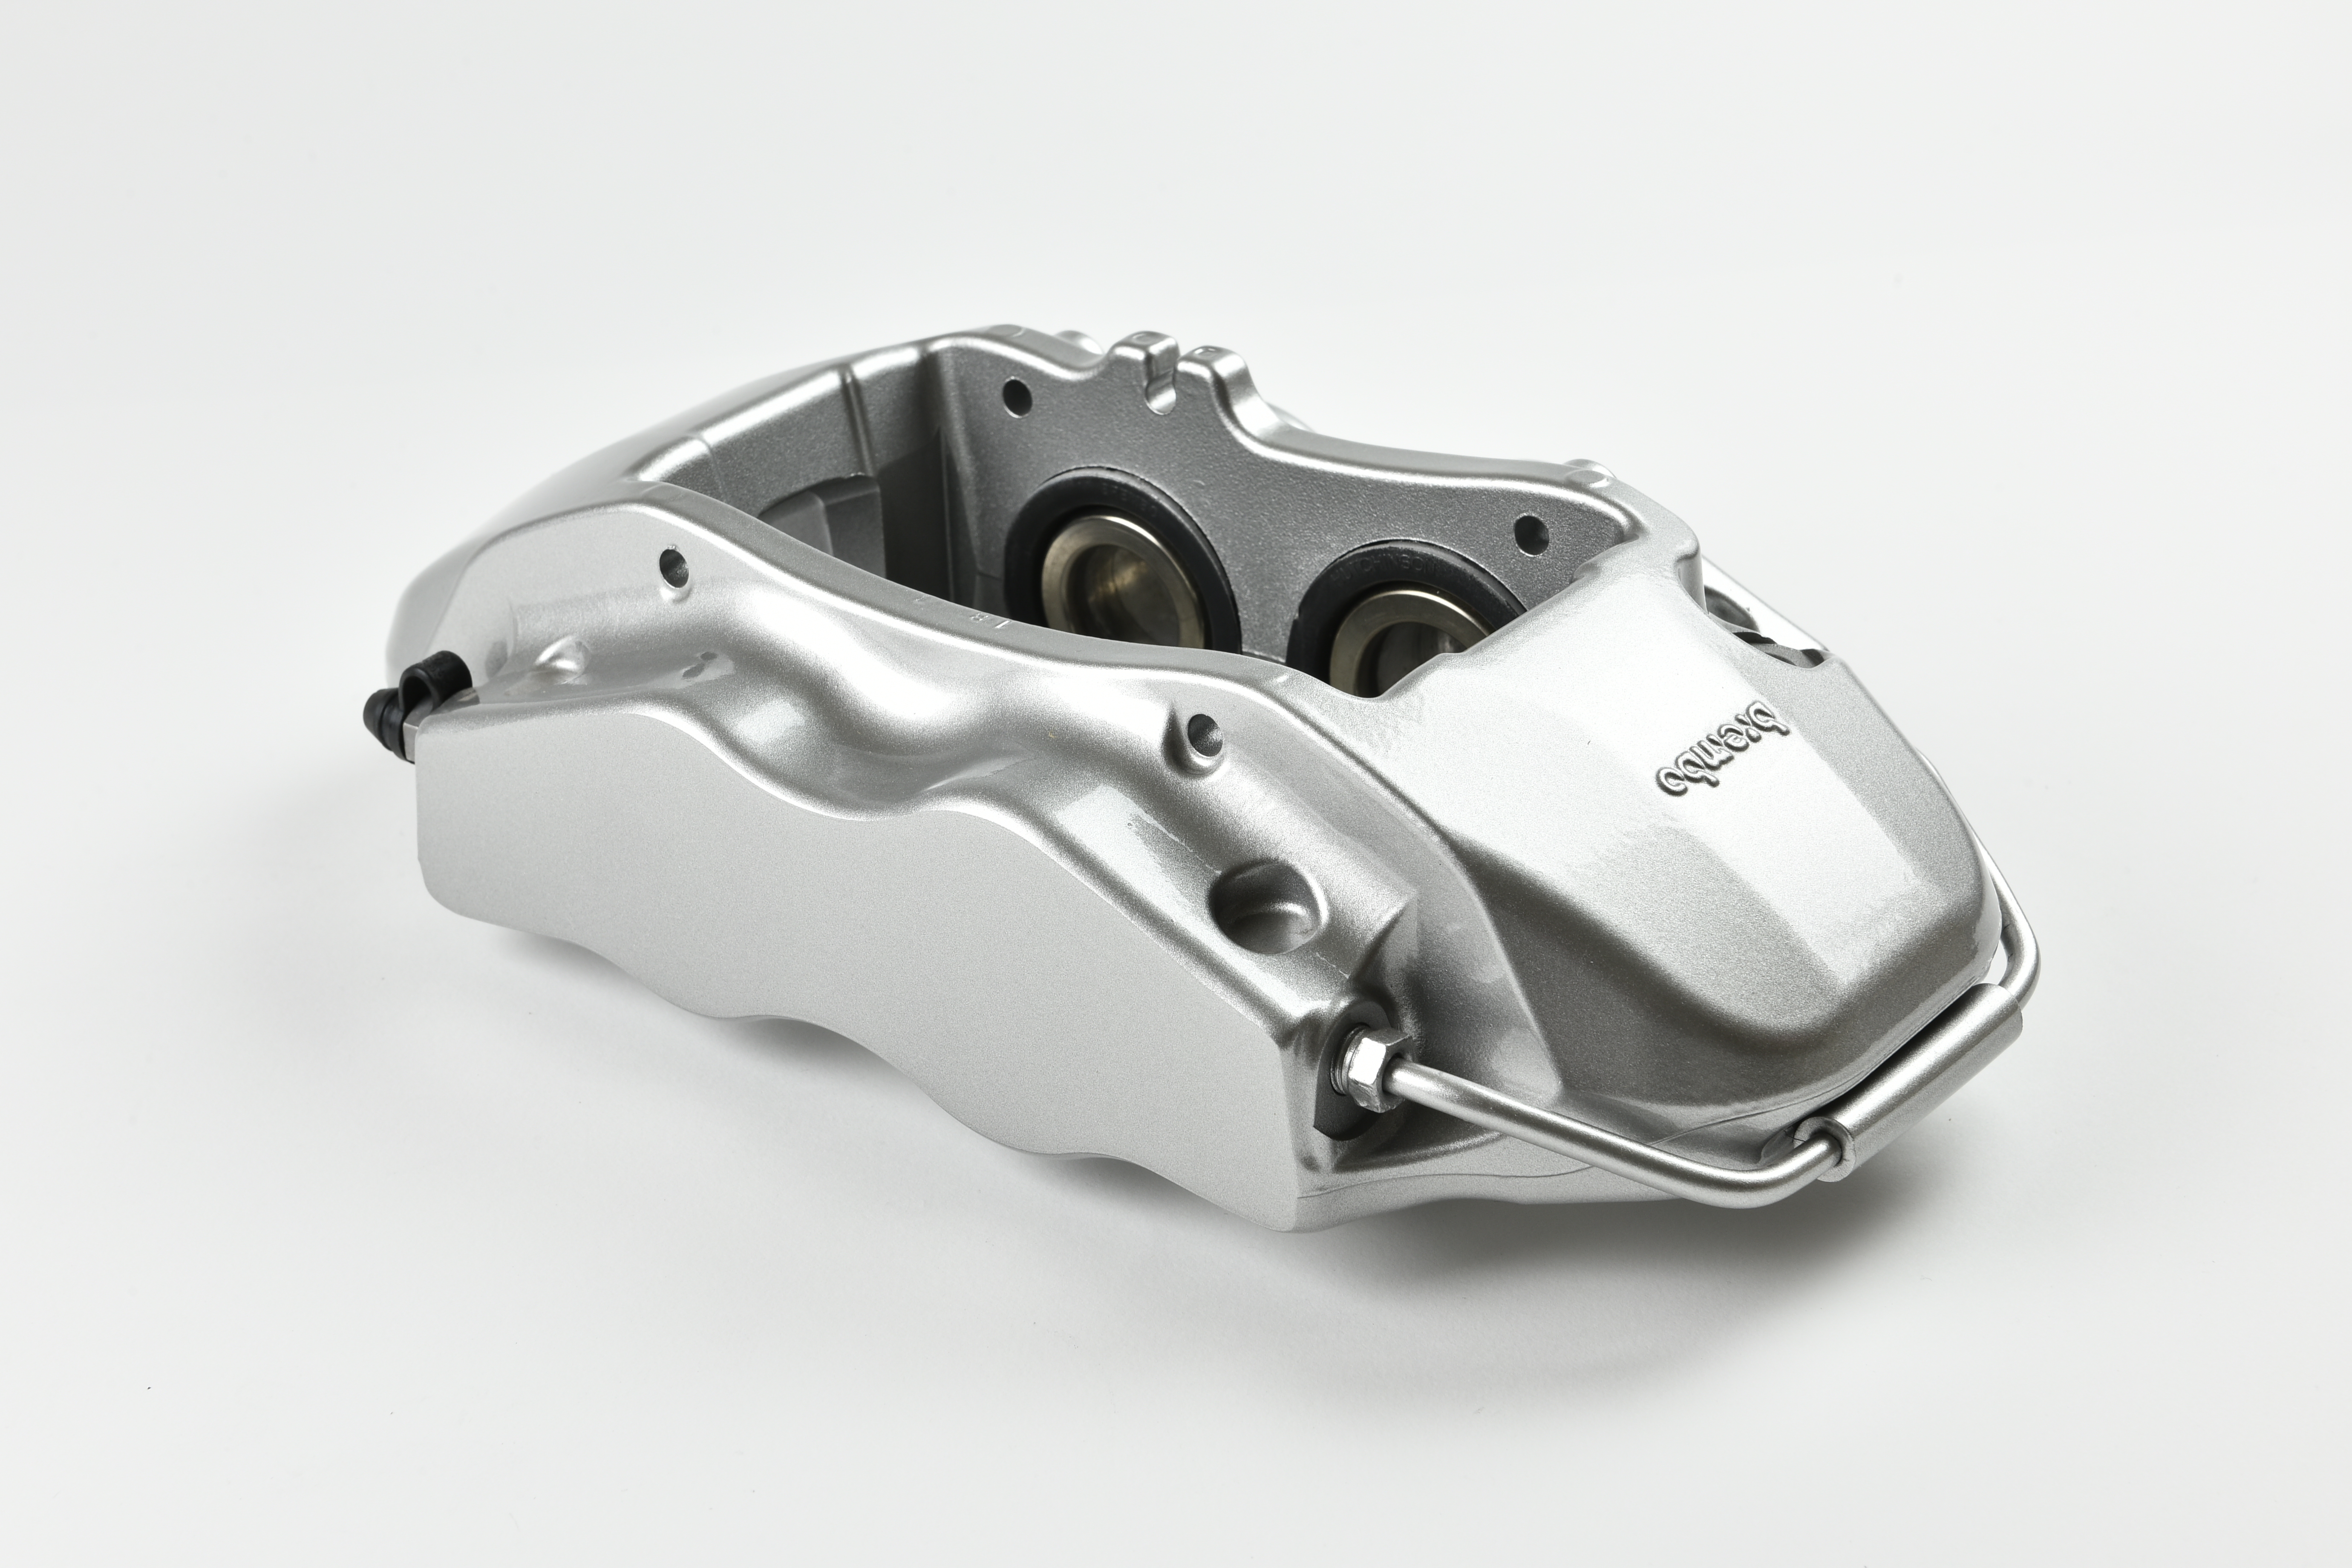 Vagbremtechnic 3 Vagbremtechnic Releases Details Of Brembo Brake Kit For Various VW Group Models